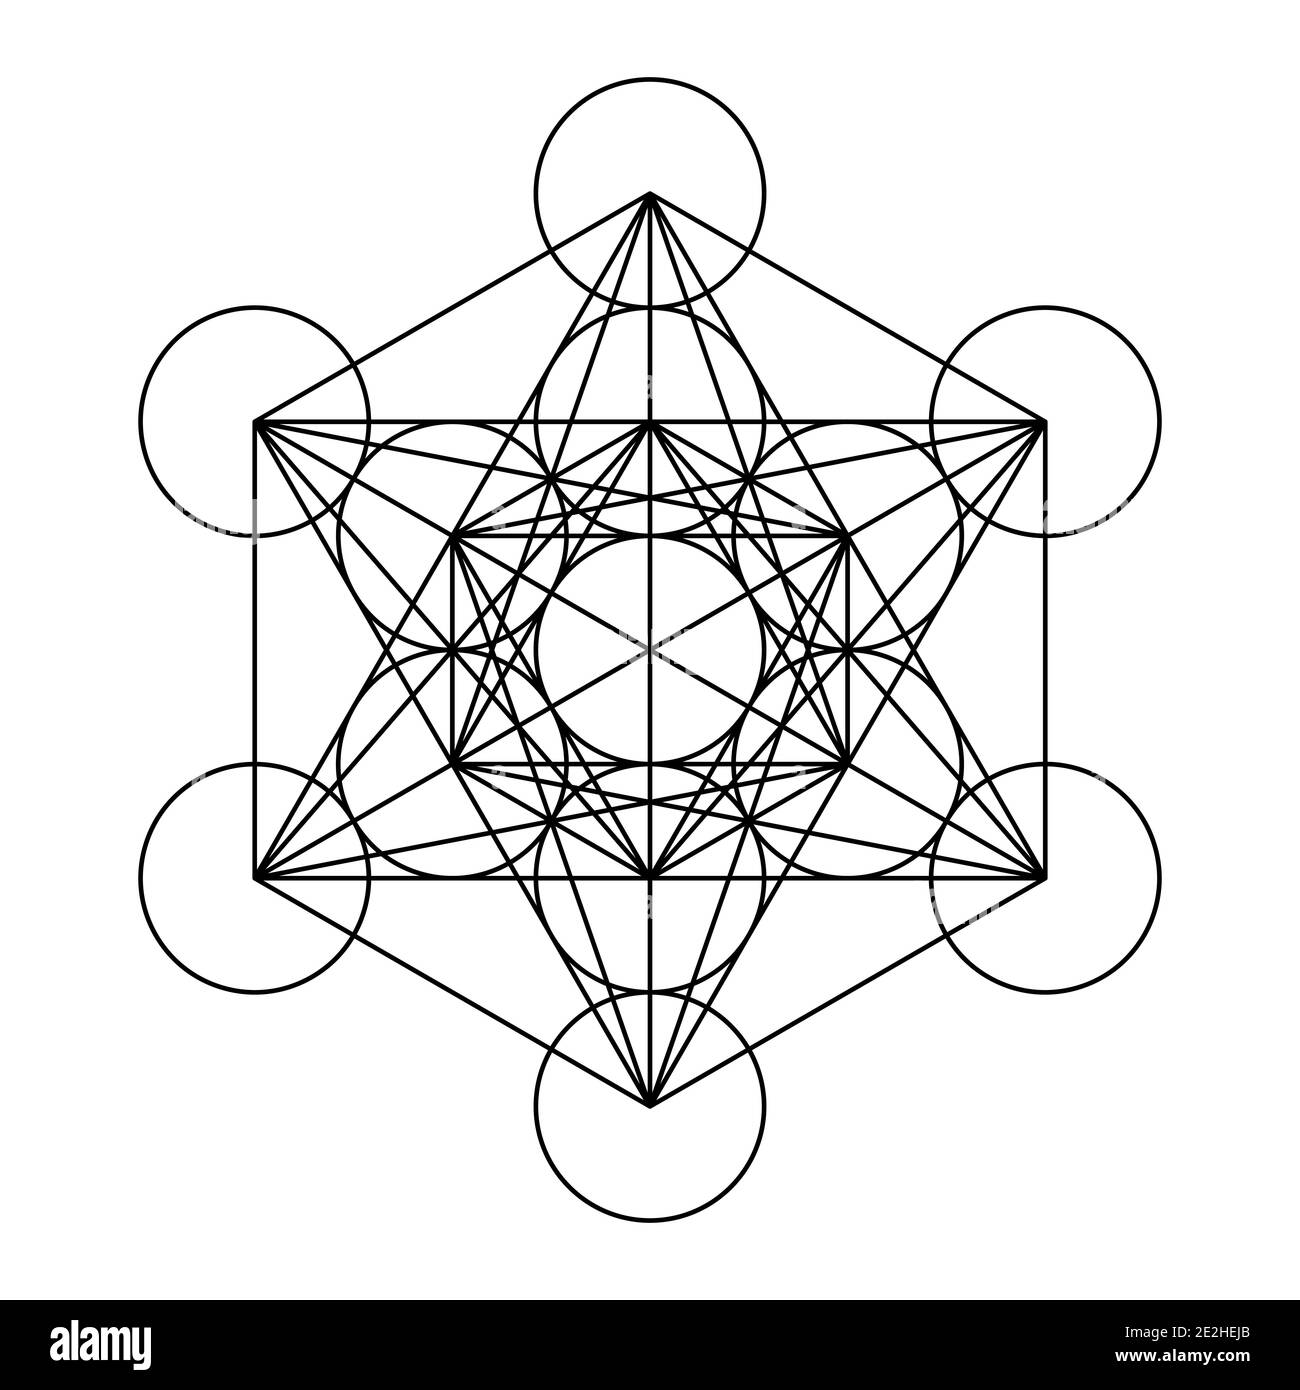 Metatrons Würfel, ein mystisches Symbol, abgeleitet von der Blume des Lebens. Alle dreizehn Kreise sind mit geraden Linien verbunden. Heilige Geometrie. Stockfoto